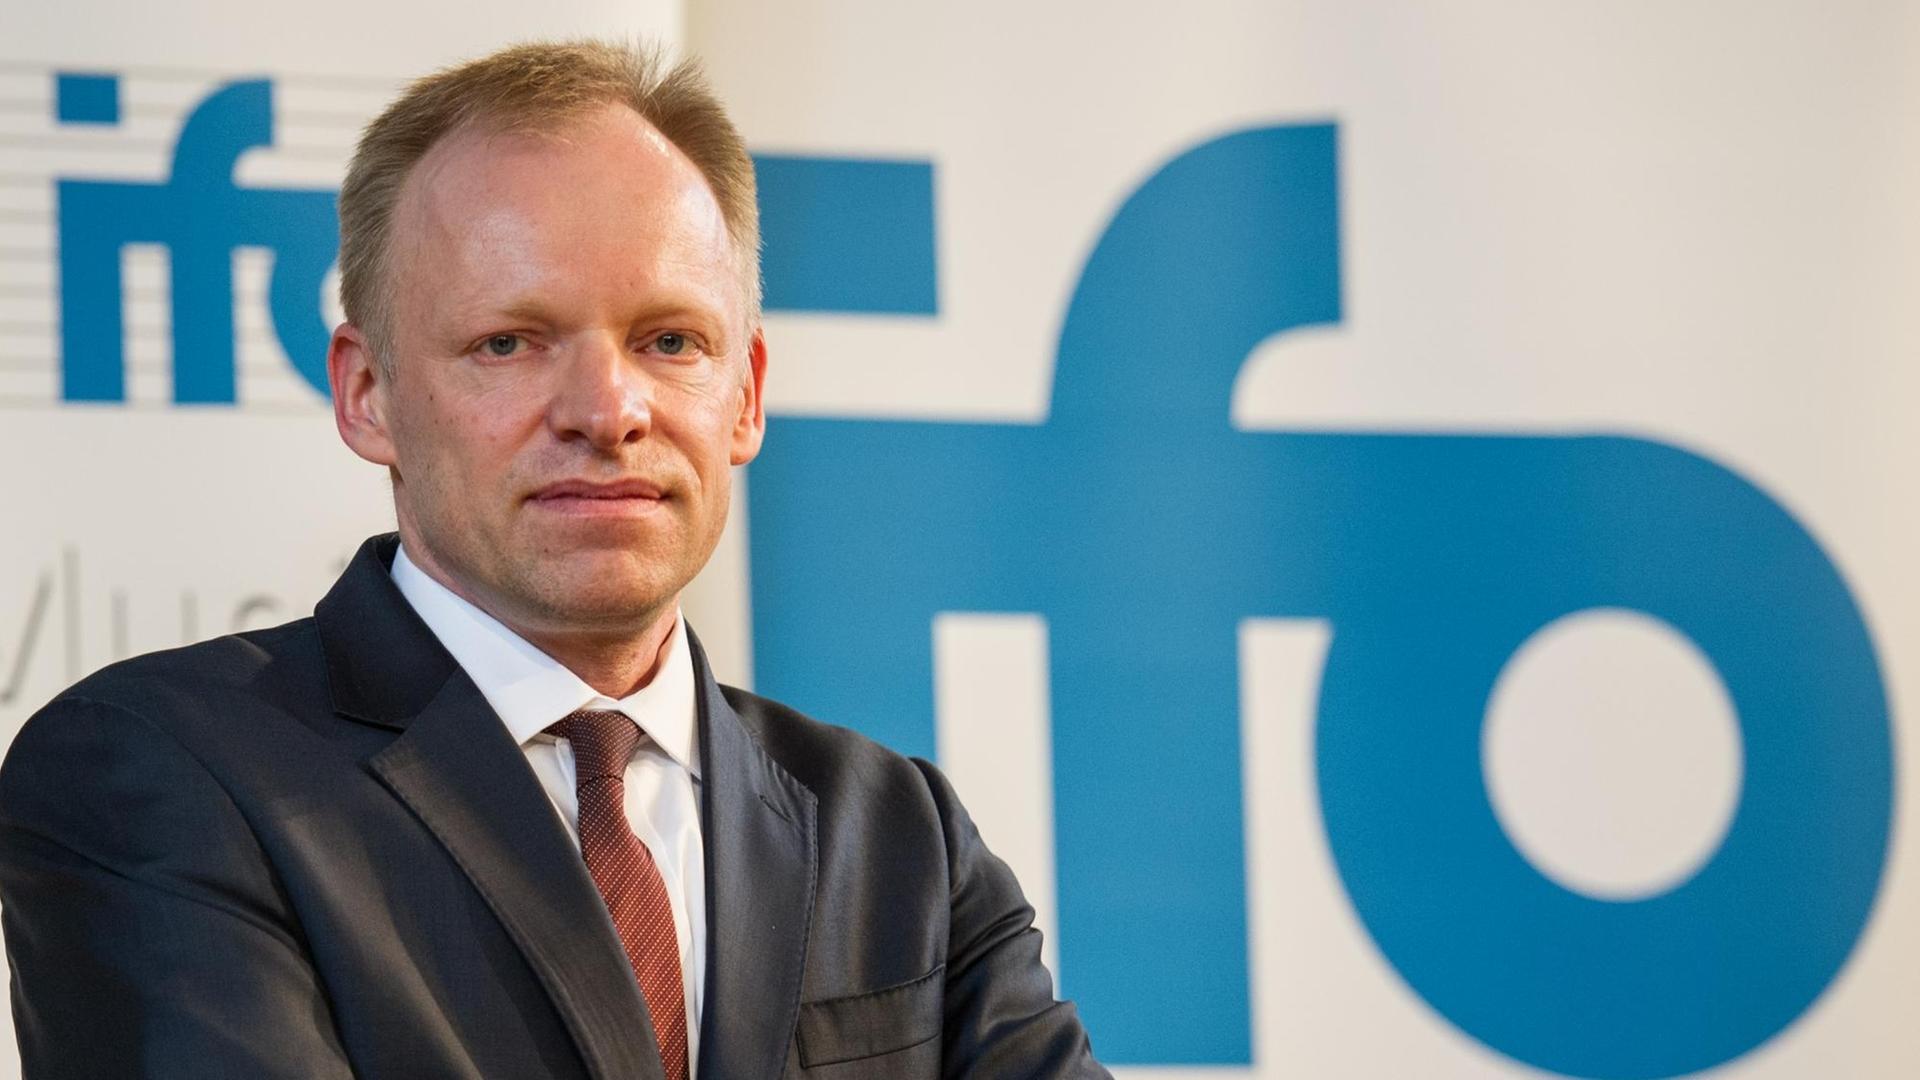 Der Präsident des ifo Instituts, Clemens Fuest, posiert vor einem Schild mit der Aufschrift "ifo".